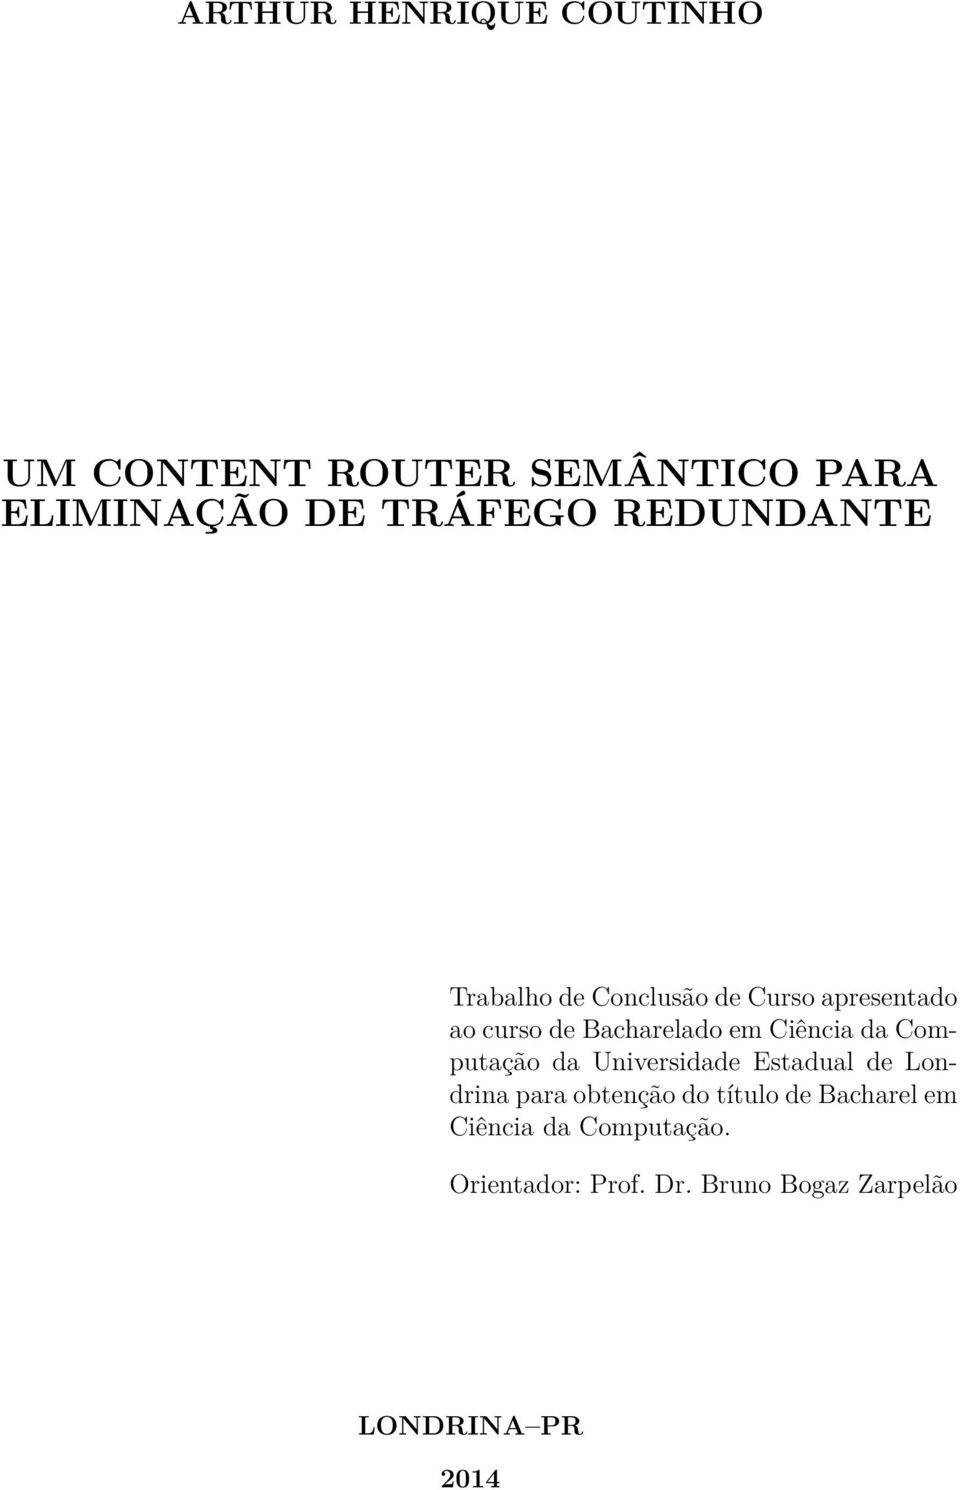 Ciência da Computação da Universidade Estadual de Londrina para obtenção do título de